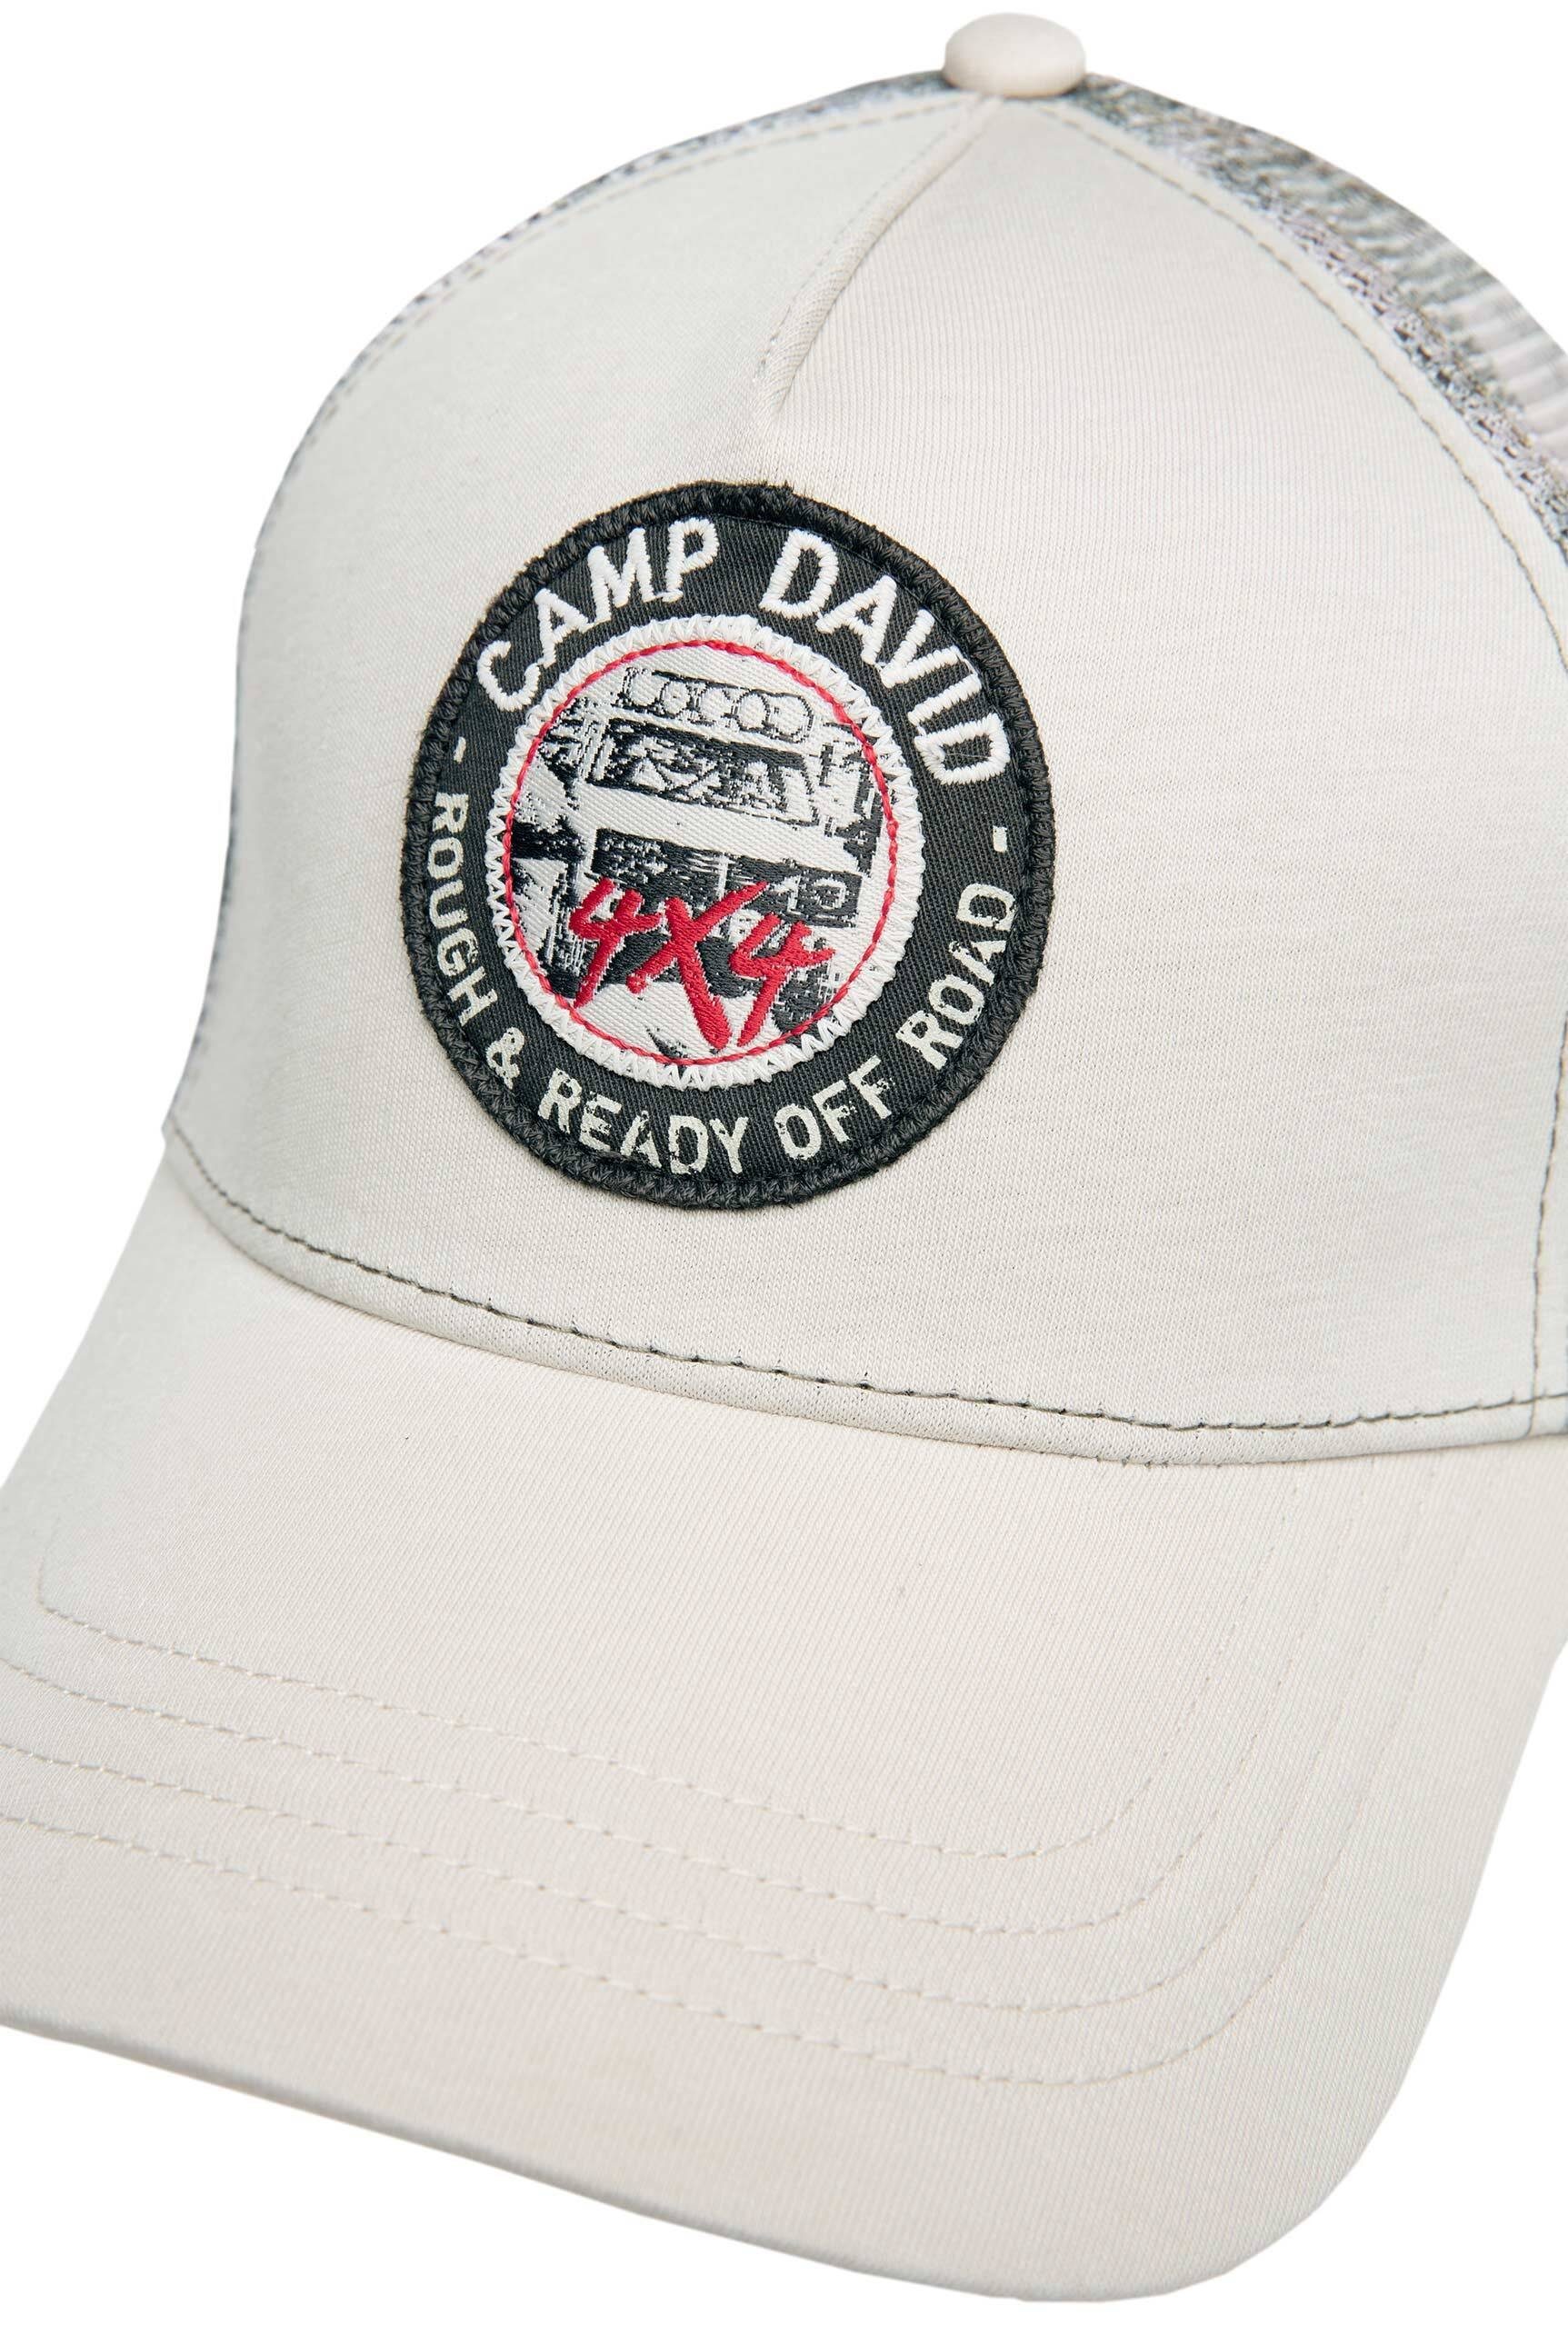 CAMP mit DAVID Netzeinsatz hinten Cap Trucker